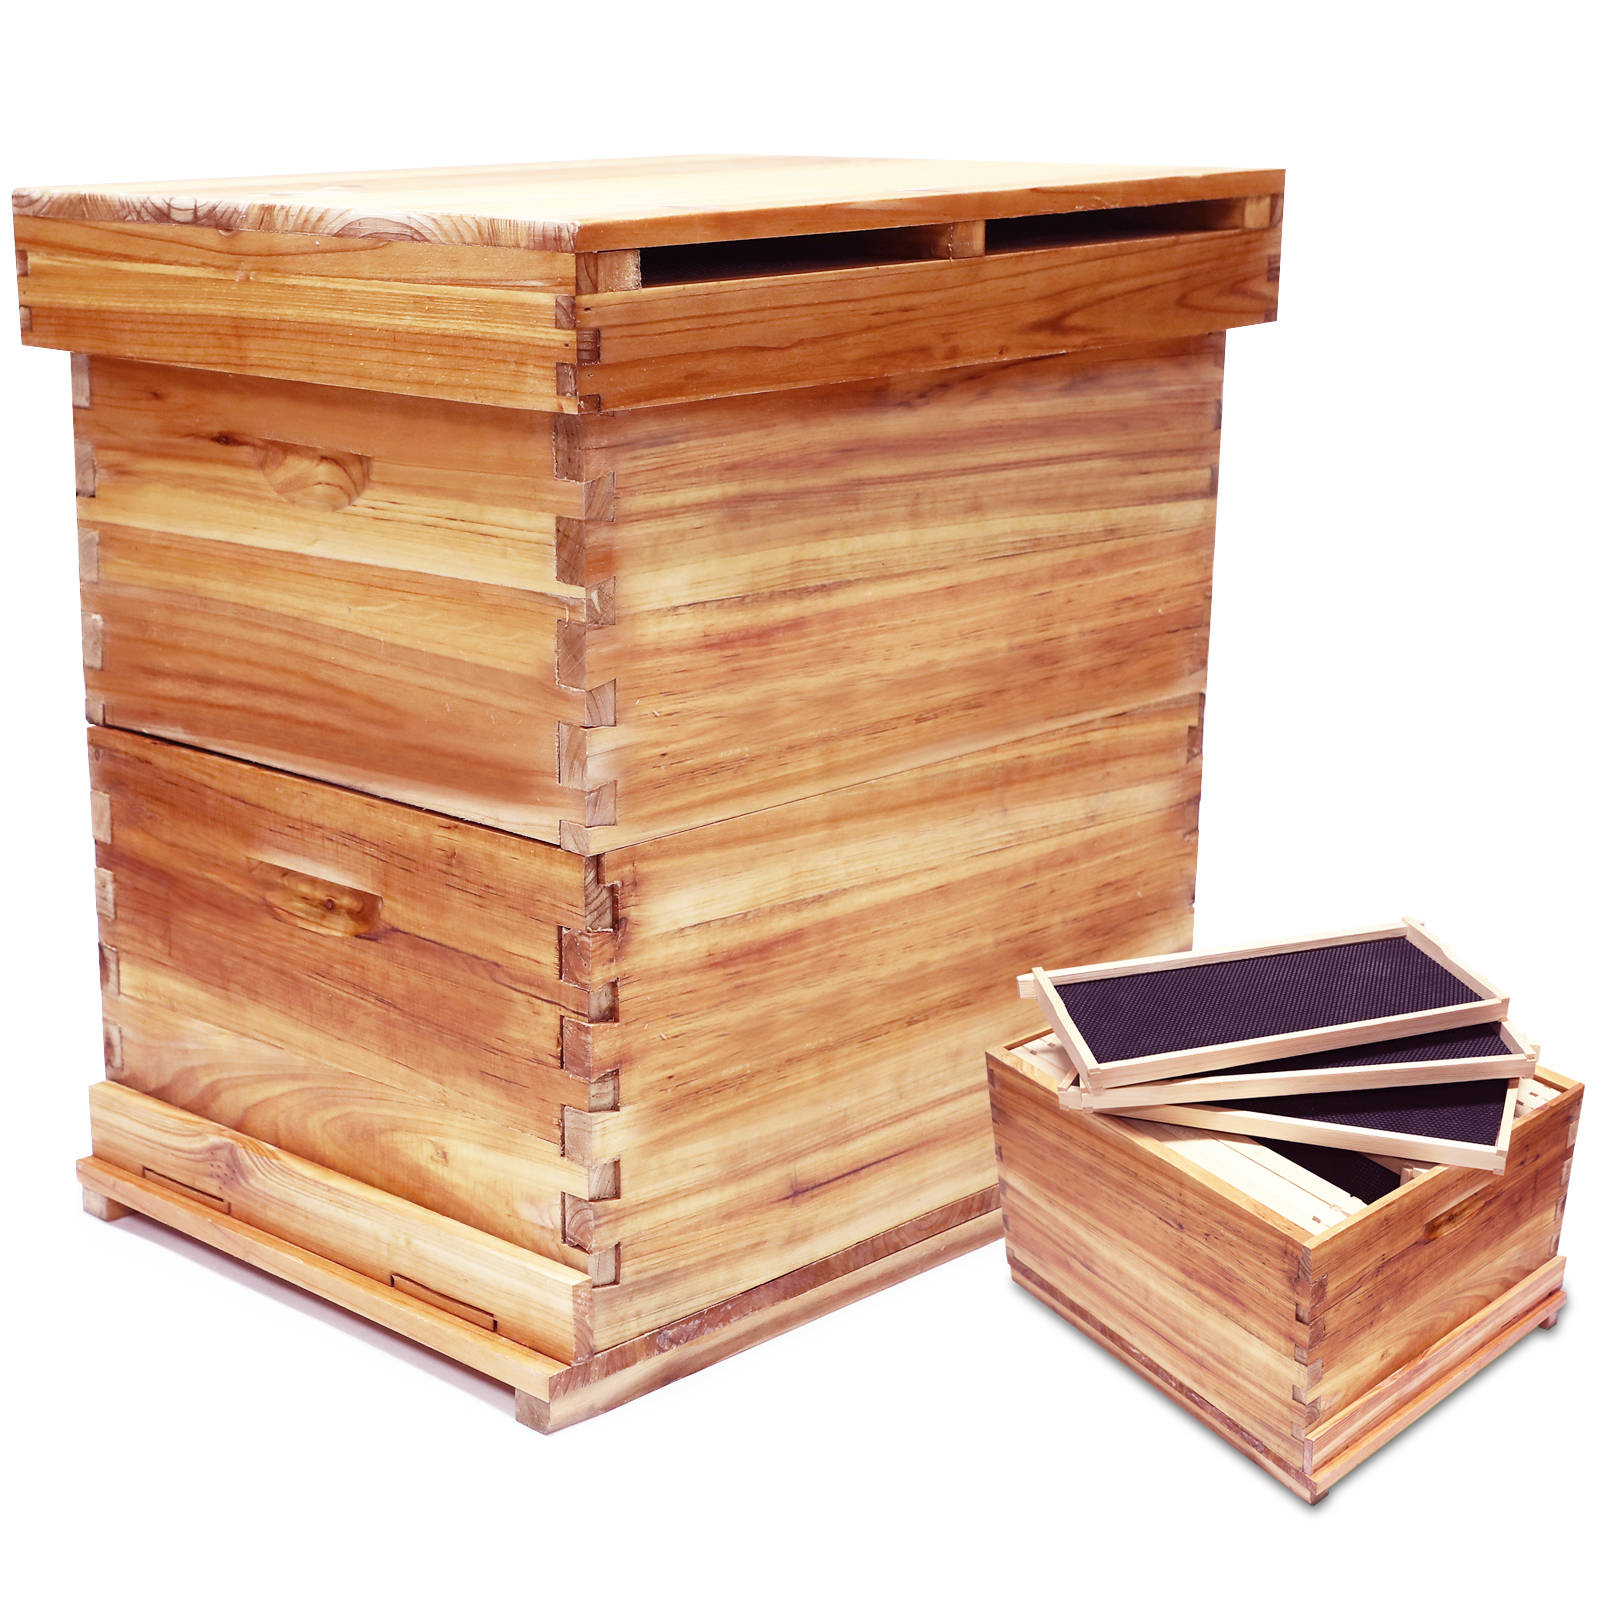 ミツバチ巣箱 養蜂箱 蜜蜂 蜂ハイブ ミツバチ 養蜂ツール 組み立て キット 高い耐荷重性 ミツバチ飼育箱 ミツバチの採蜜 蜂の巣 ハチミツの家 ミツバチ捕獲箱 耐久性 蜜蜂の巣箱